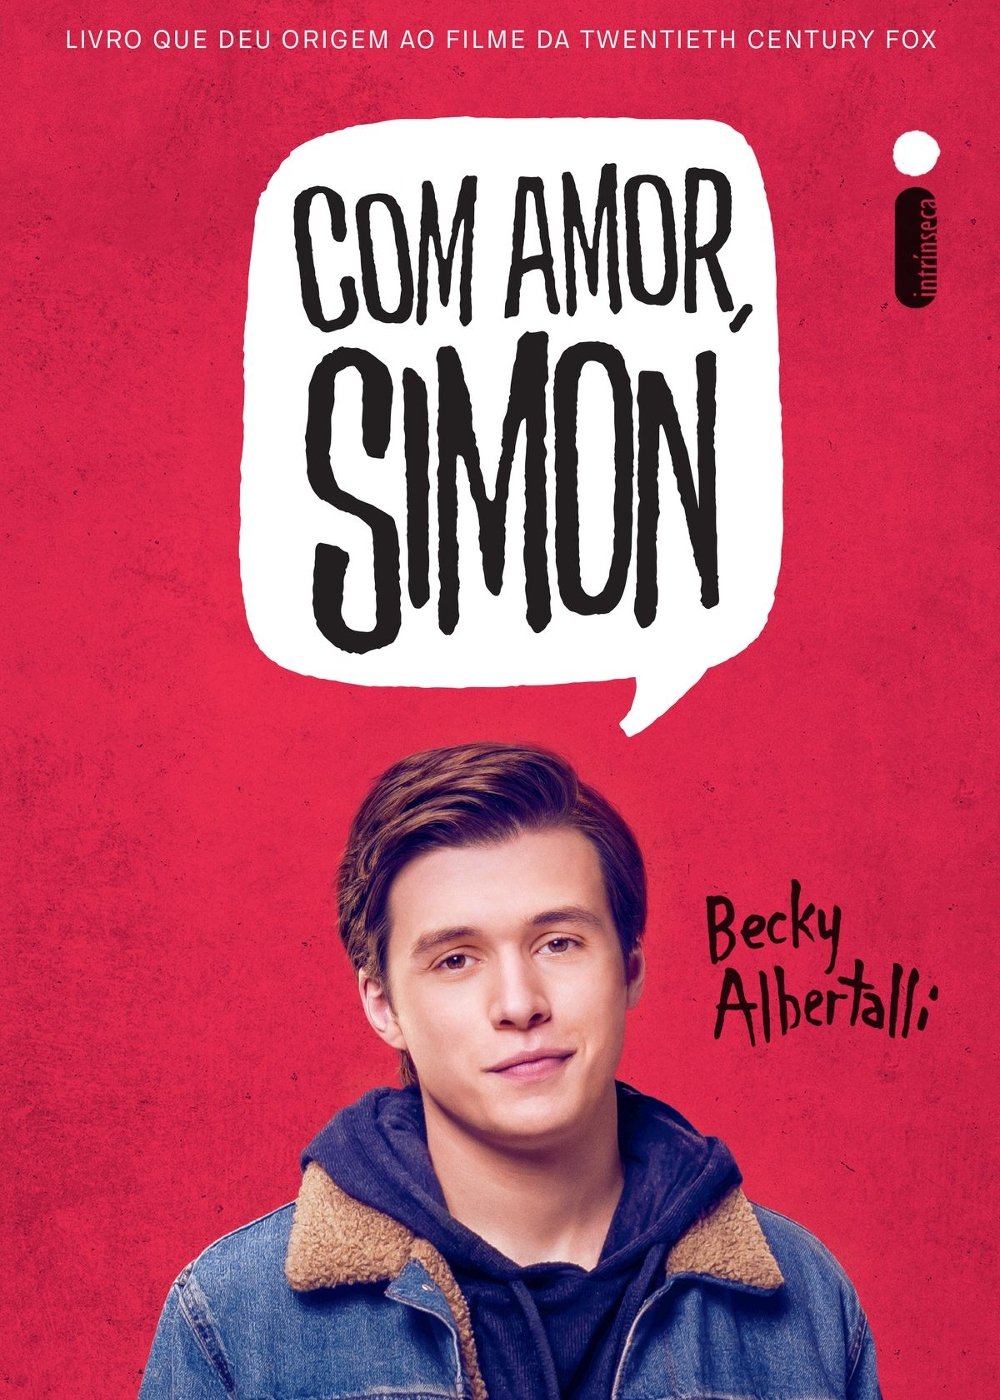 Com amor, Simon - livros de romance lgbtqia+ - livros - dicas - estante - https://stealthelook.com.br